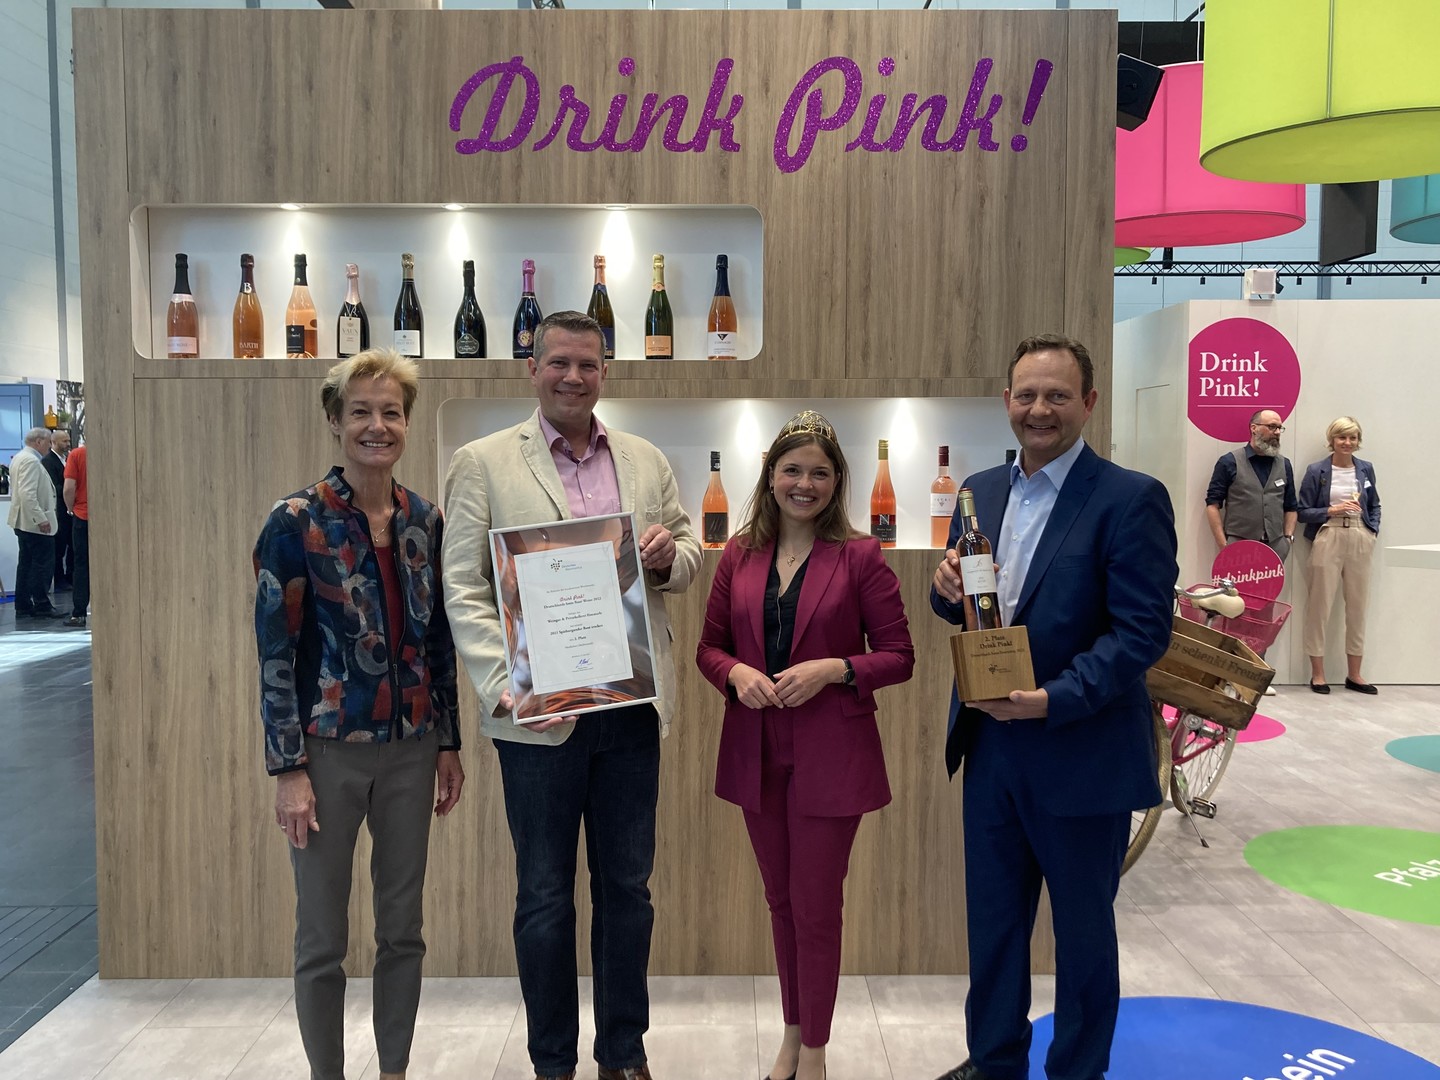 Monika Reule (Geschäftsführerin DWI), Philipp Milke (Kellermeister), Sina Erdrich (Deutsche Weinkönigin) und Siegbert Bimmerle sind sichtlich stolz auf die Auszeichnung bei Drink Pink 2022 (Wein) und gehören somit zu den besten deutschen Rosés.